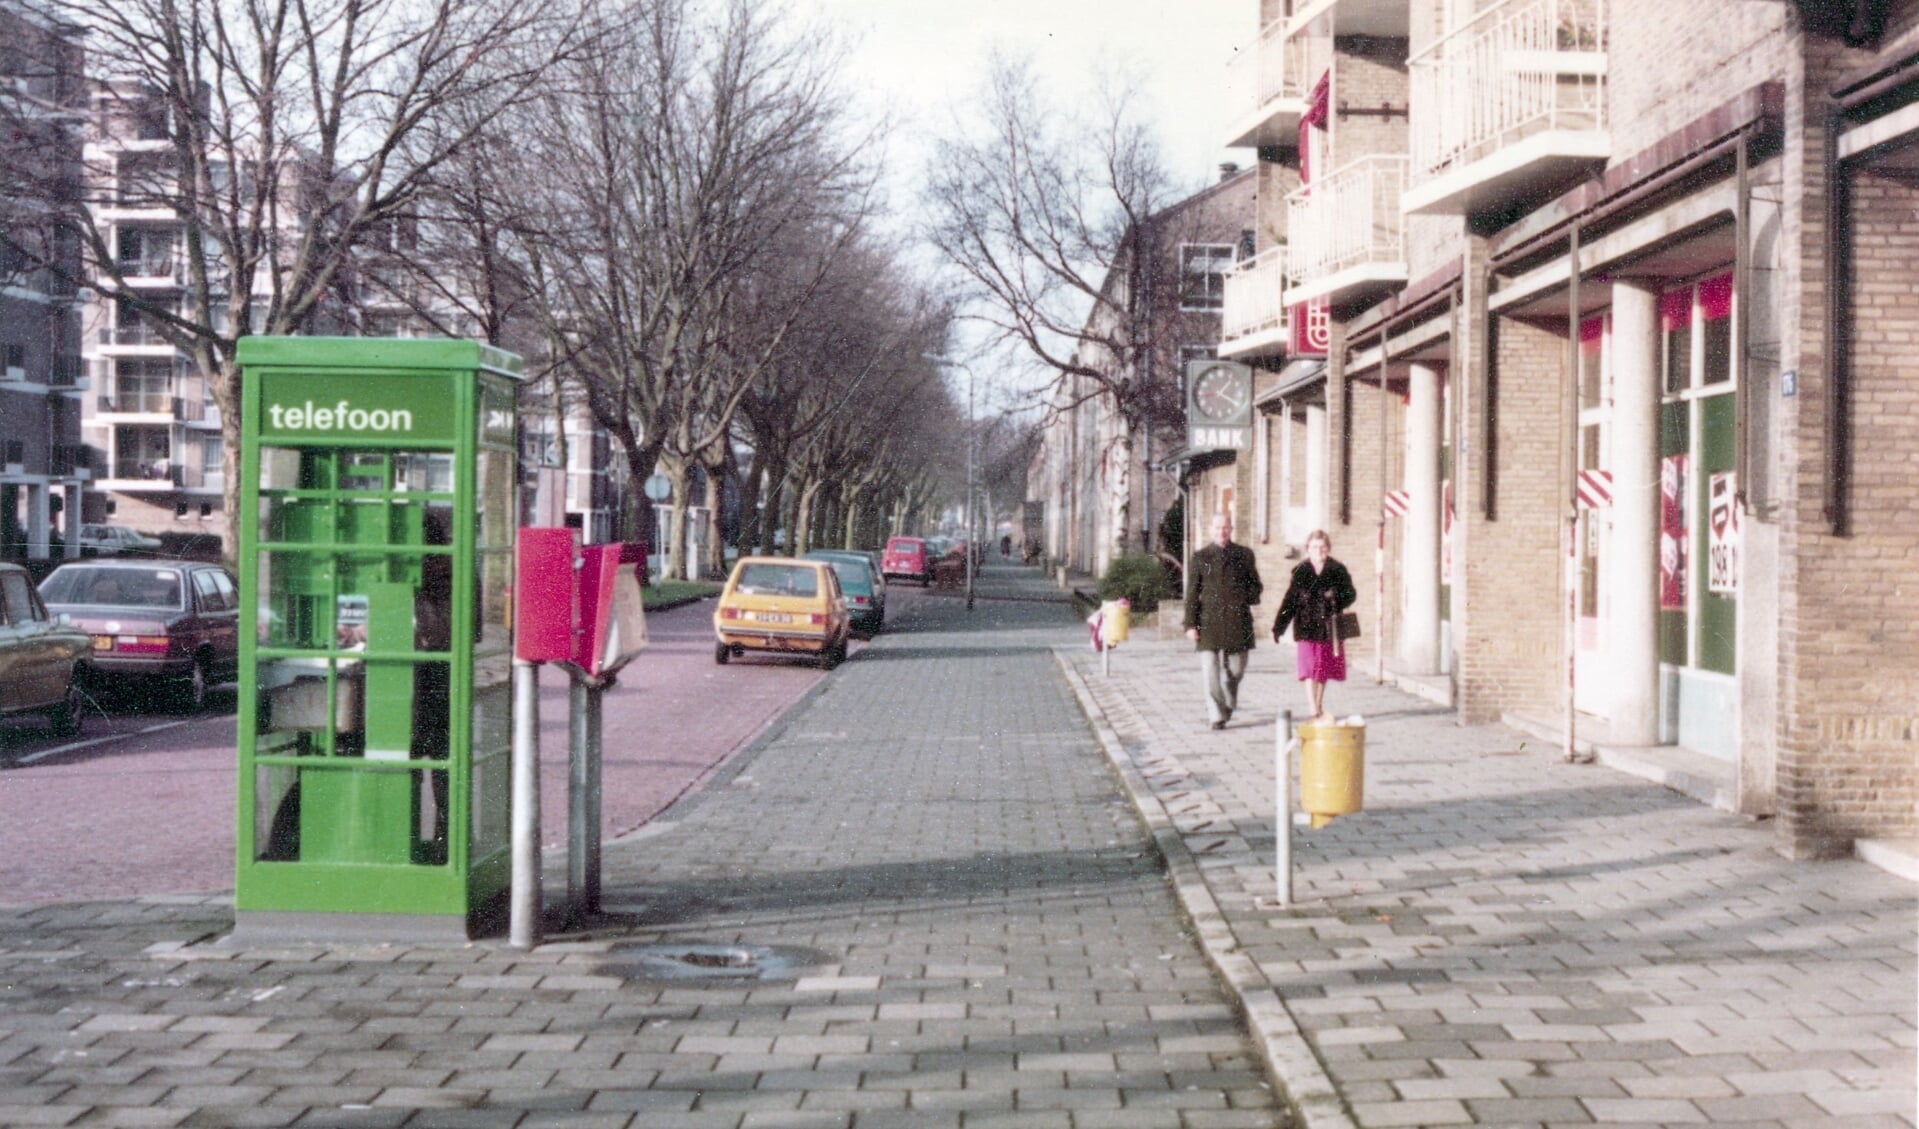 Telefooncel op de Pettelaarseweg in 1982. Collectie Erfgoed ’s-Hertogenbosch. Fotonummer: 0089745.